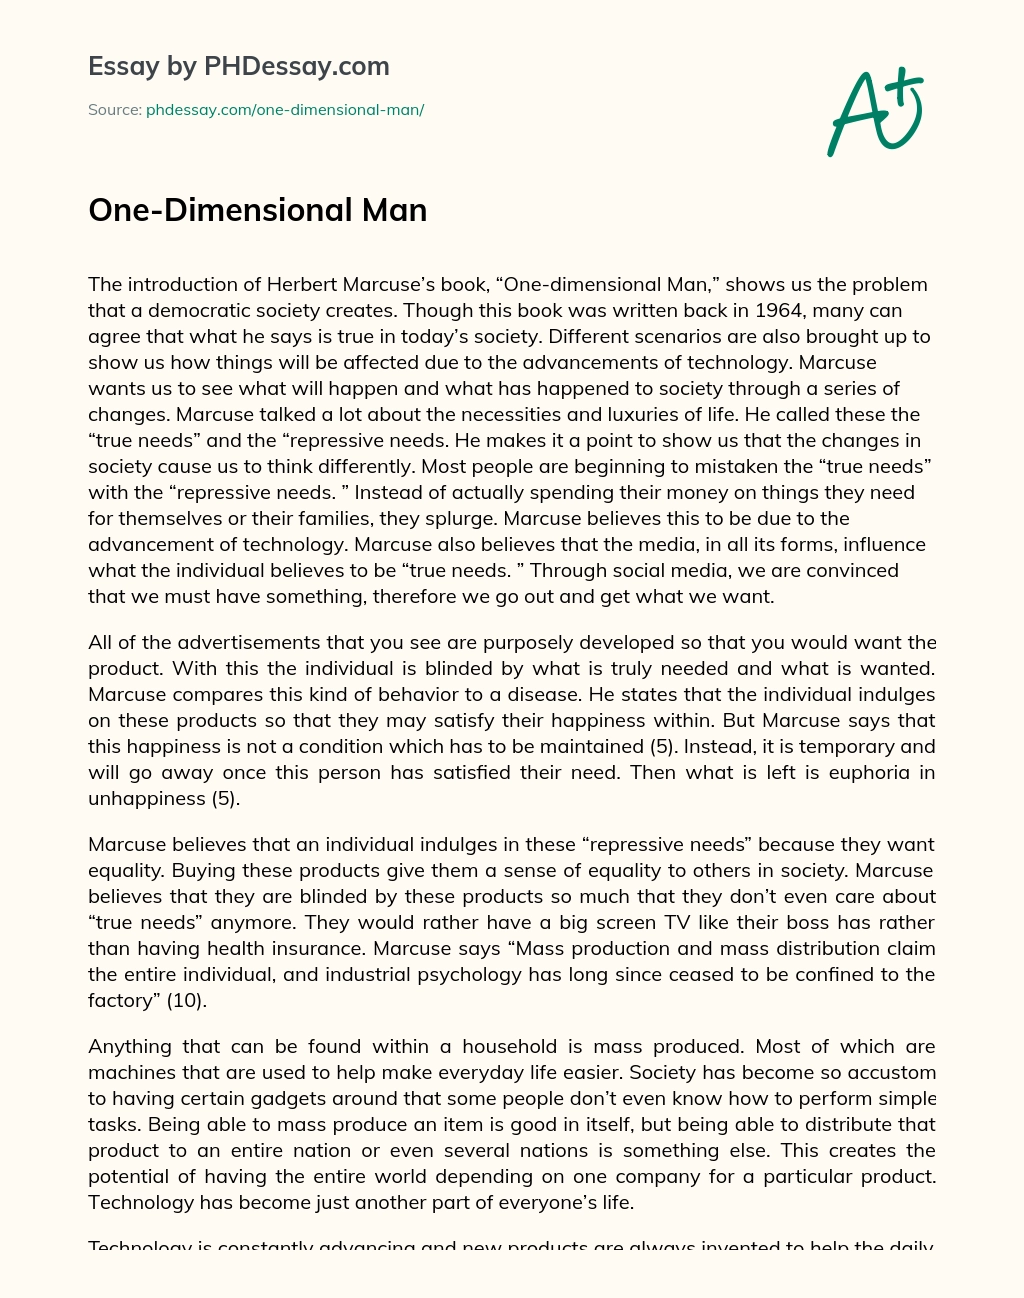 One-Dimensional Man essay